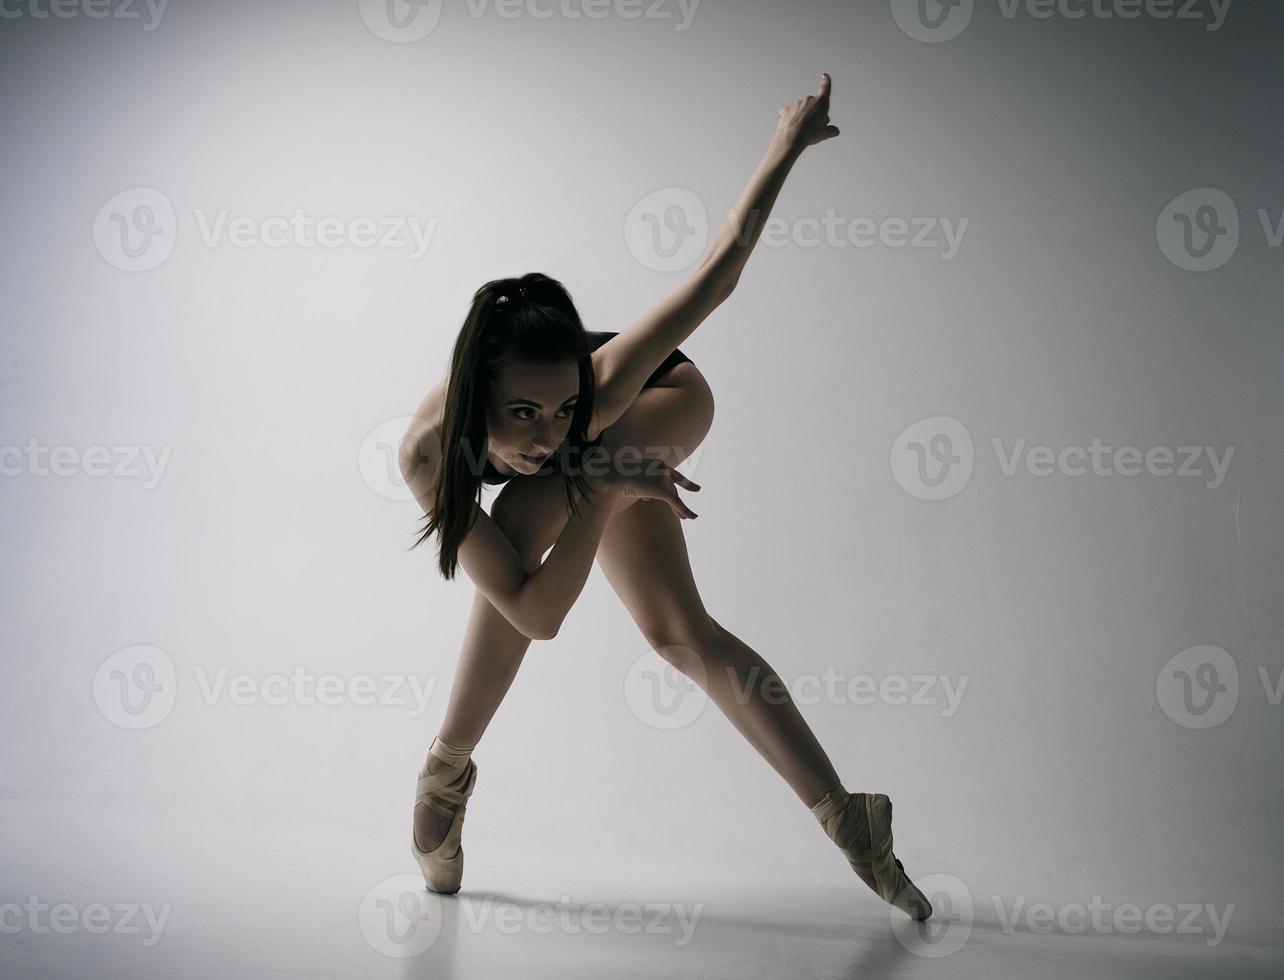 en ballerina i bodysuit och en vit kjol improviserar klassisk och modern koreografi i en fotostudio foto